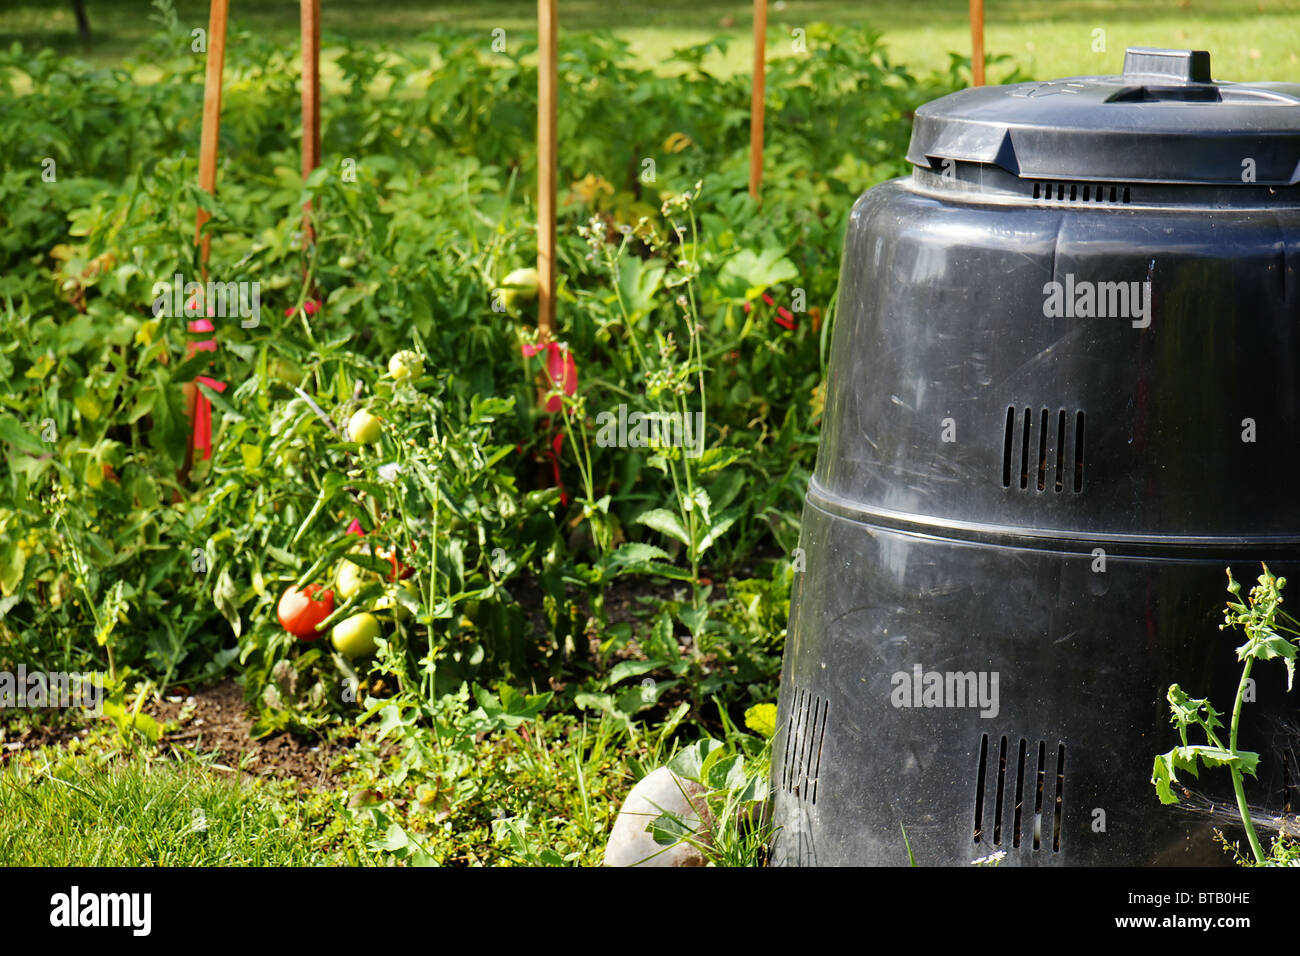 Kompost hergestellt aus recyceltem Kunststoff neben schönen Gemüse Garten mit reife Tomaten. Recycling, grün, Konzept. Stockfoto